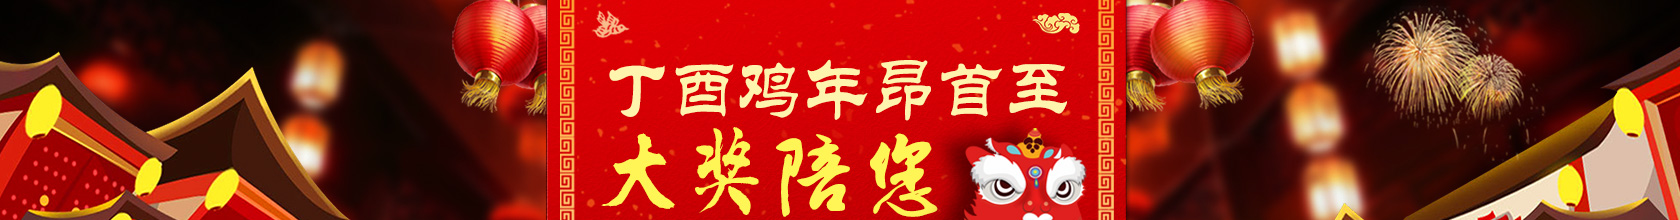 北京·年轮 系列影像展第七季